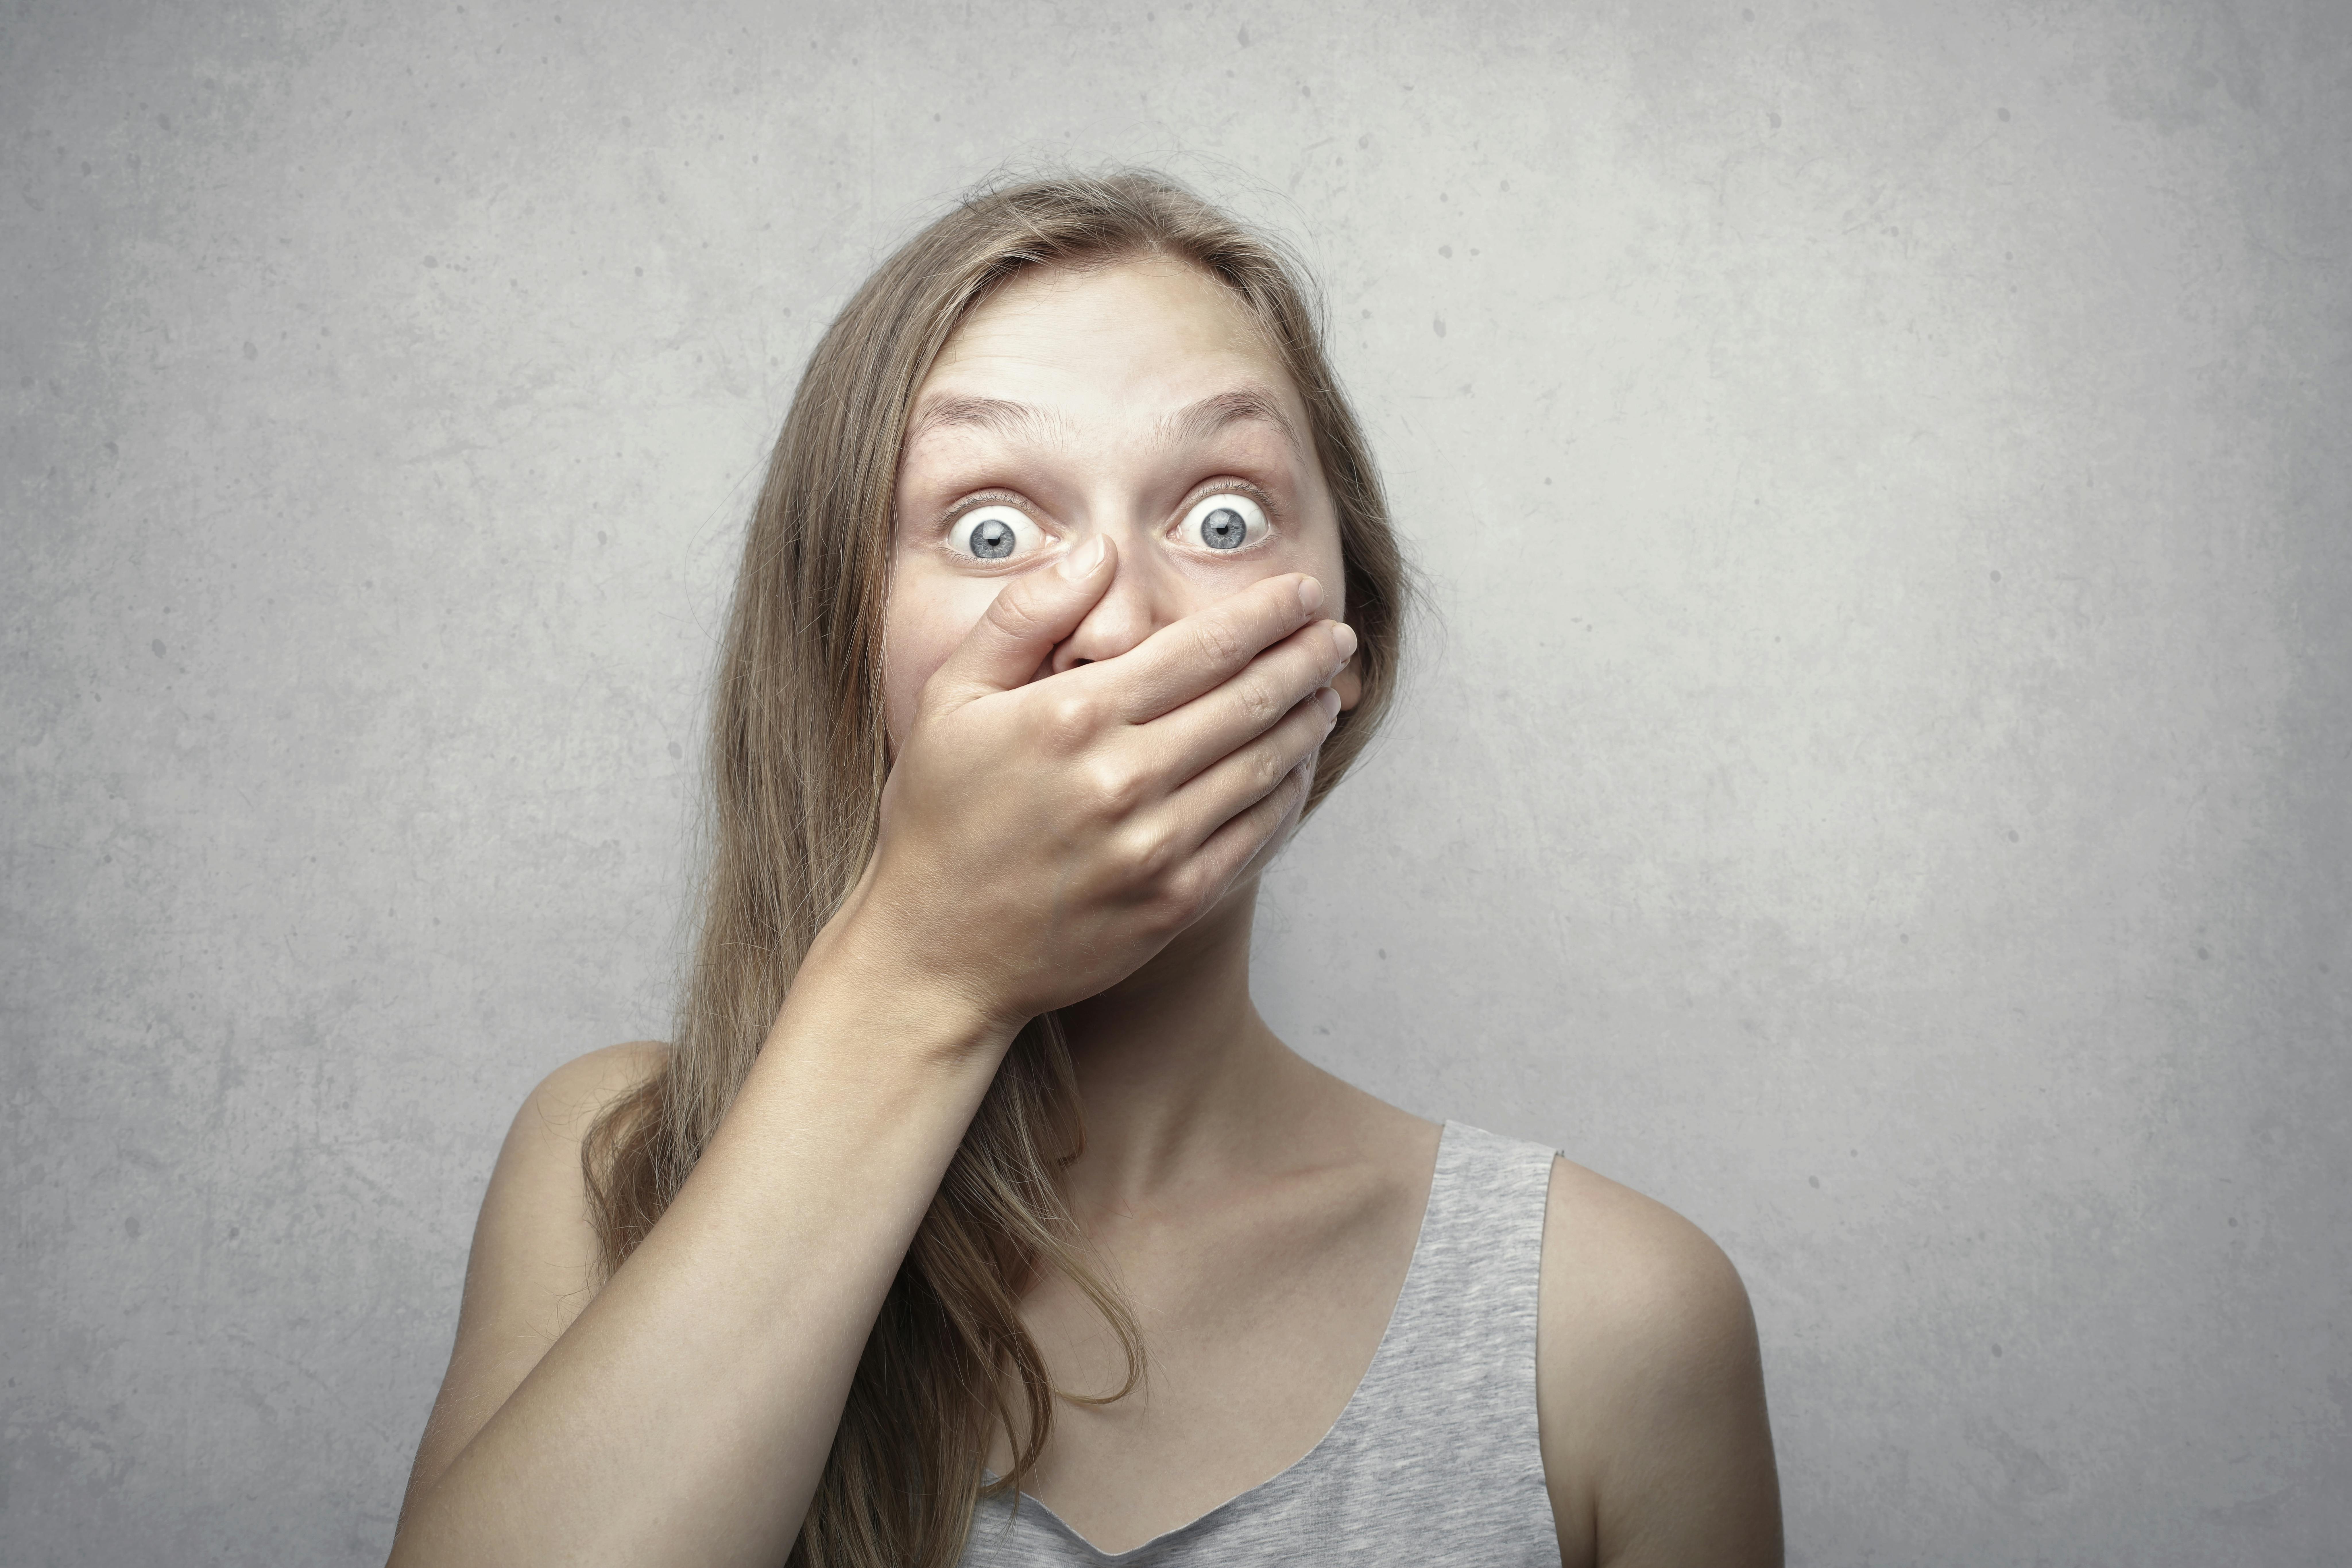 Eine Frau hält sich den Mund zu, während sie schockiert aussieht | Quelle: Pexels